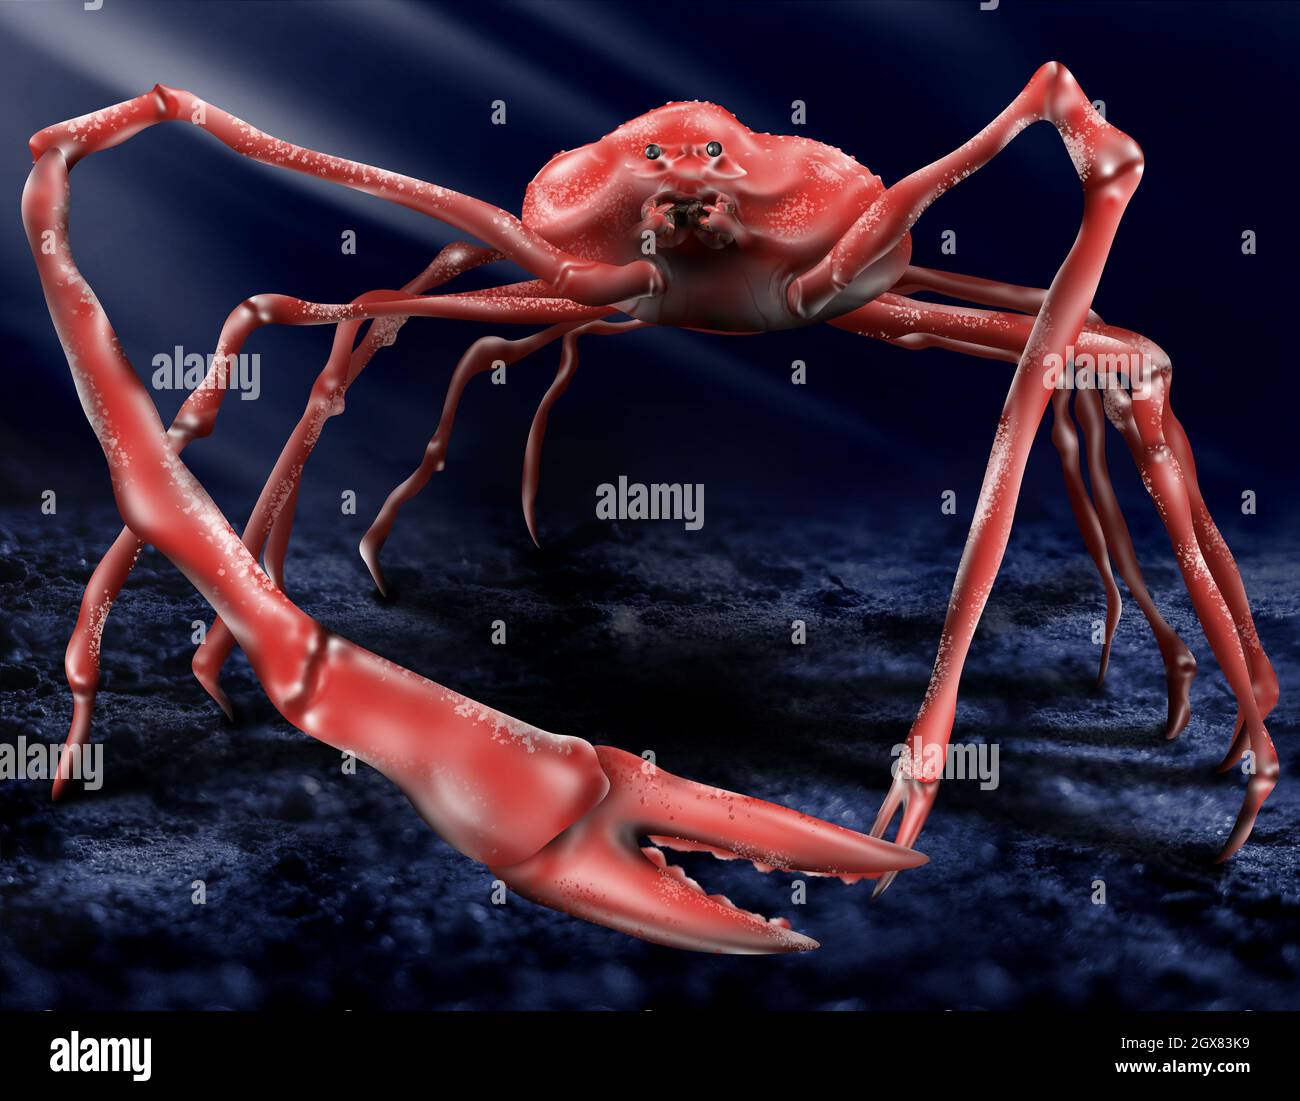 Cangrejo araña japonés en el mar, cangrejo gigante coloreado rojo y blanco en el fondo del océano. Criatura de mar profundo. (Macrocheira kaempferi) Foto de stock